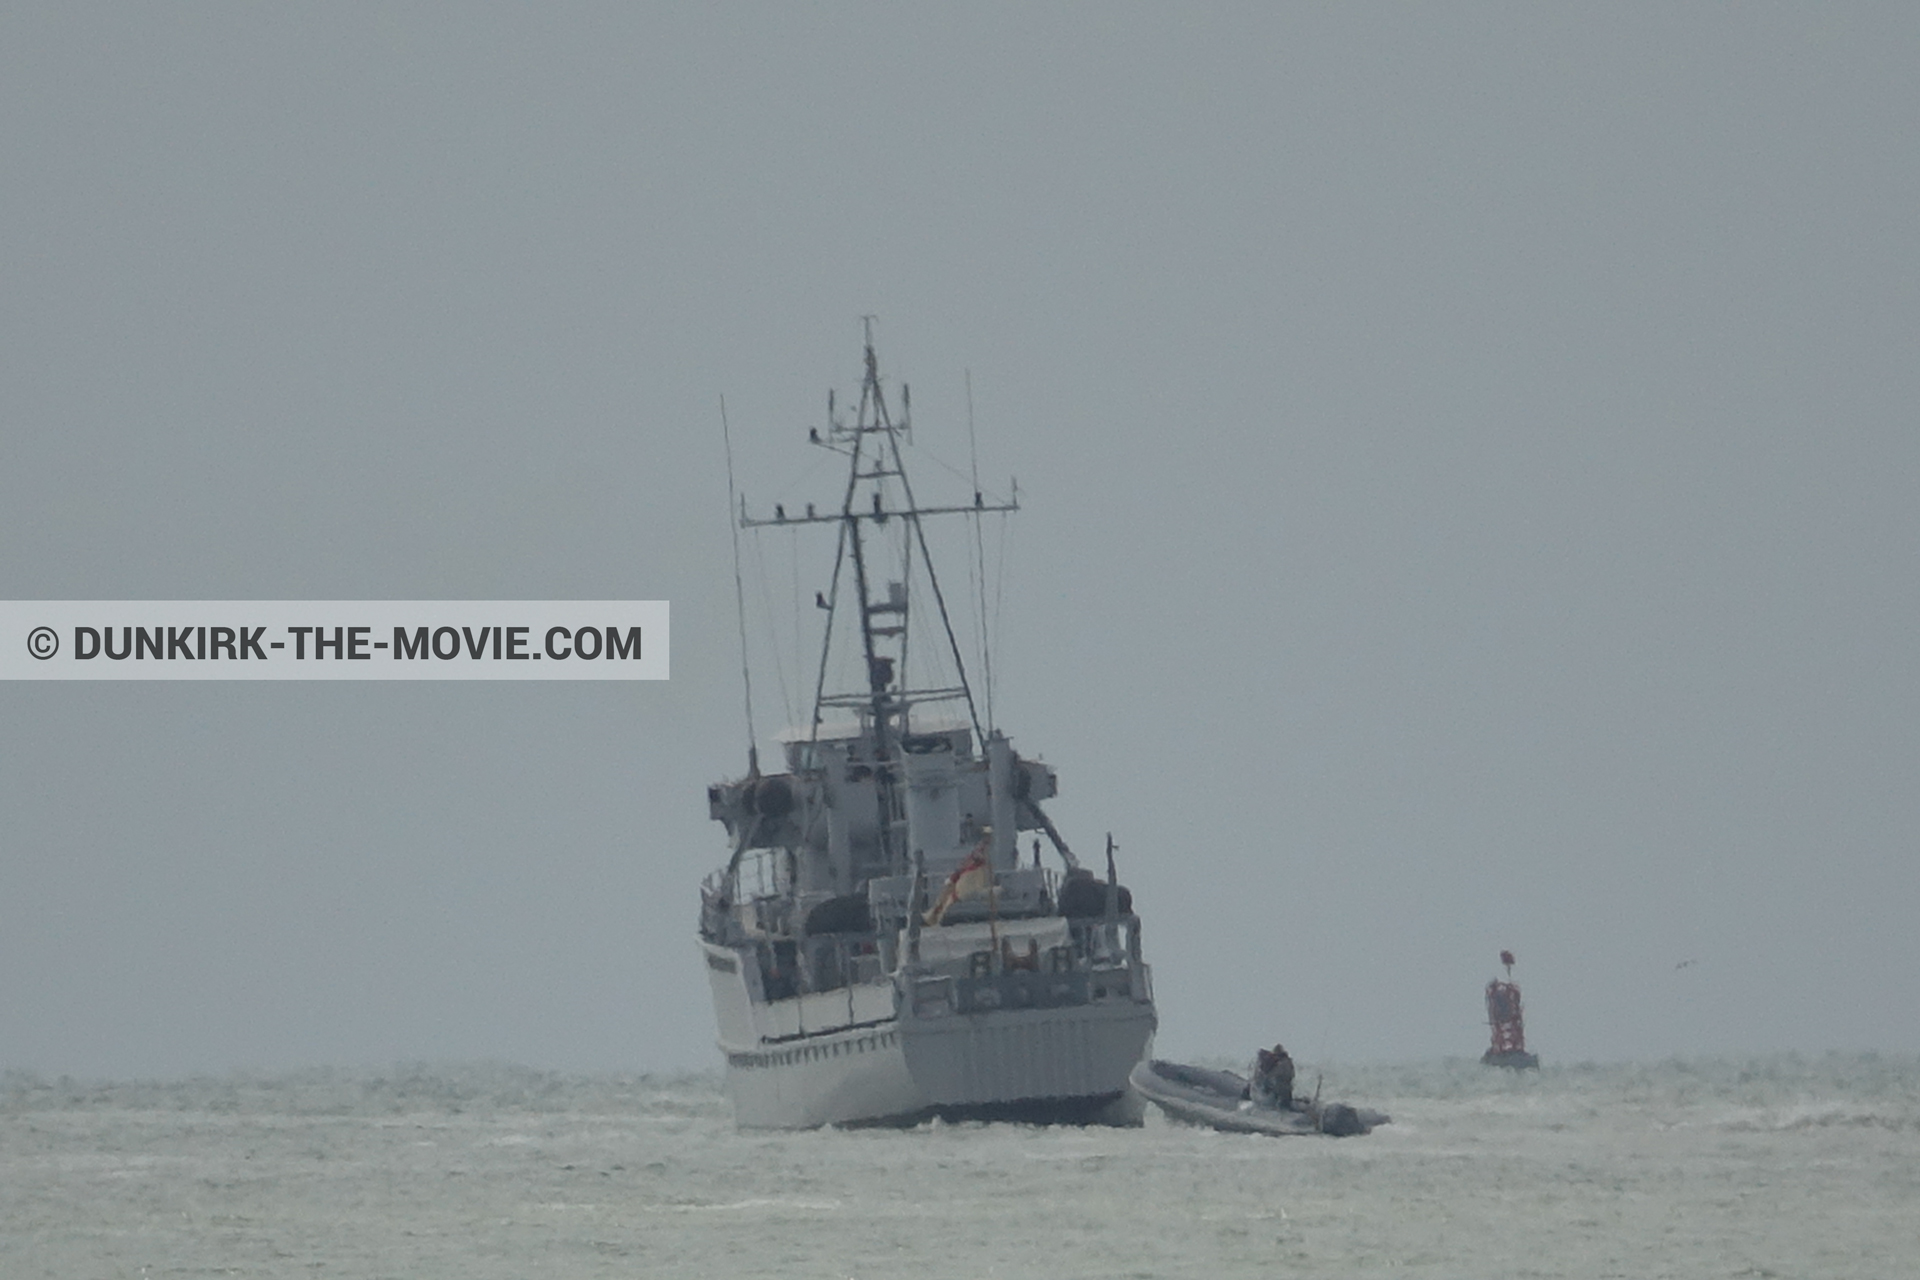 Fotos con barco, cielo gris, H32 - Hr.Ms. Sittard, mares agitados,  durante el rodaje de la película Dunkerque de Nolan